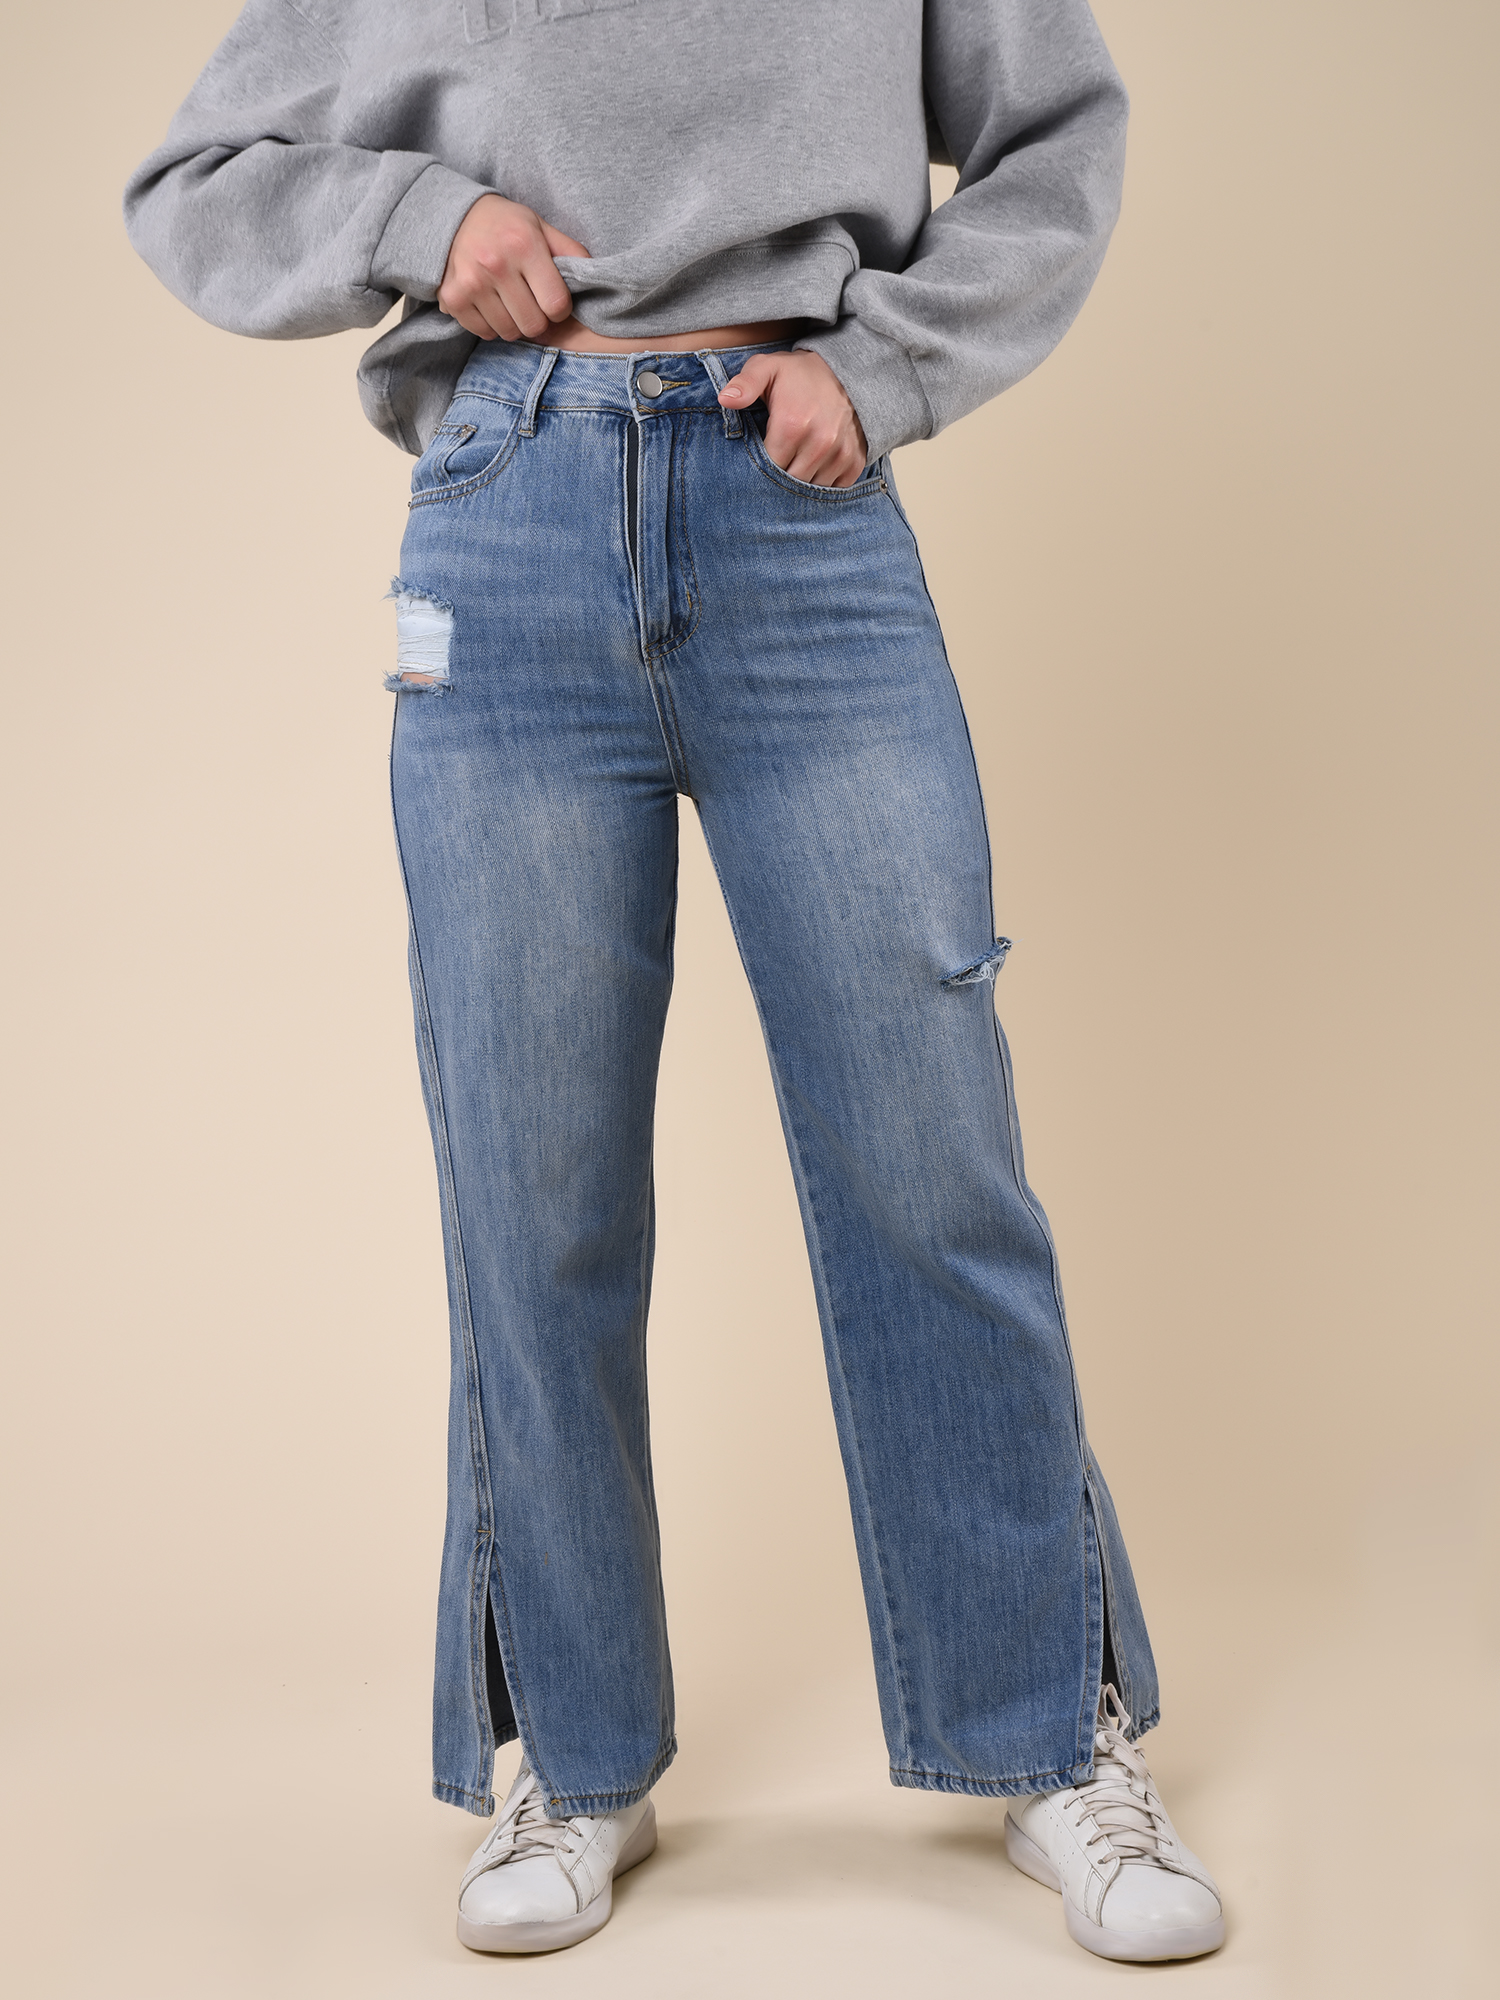 Купить Брюки женские джинсовые